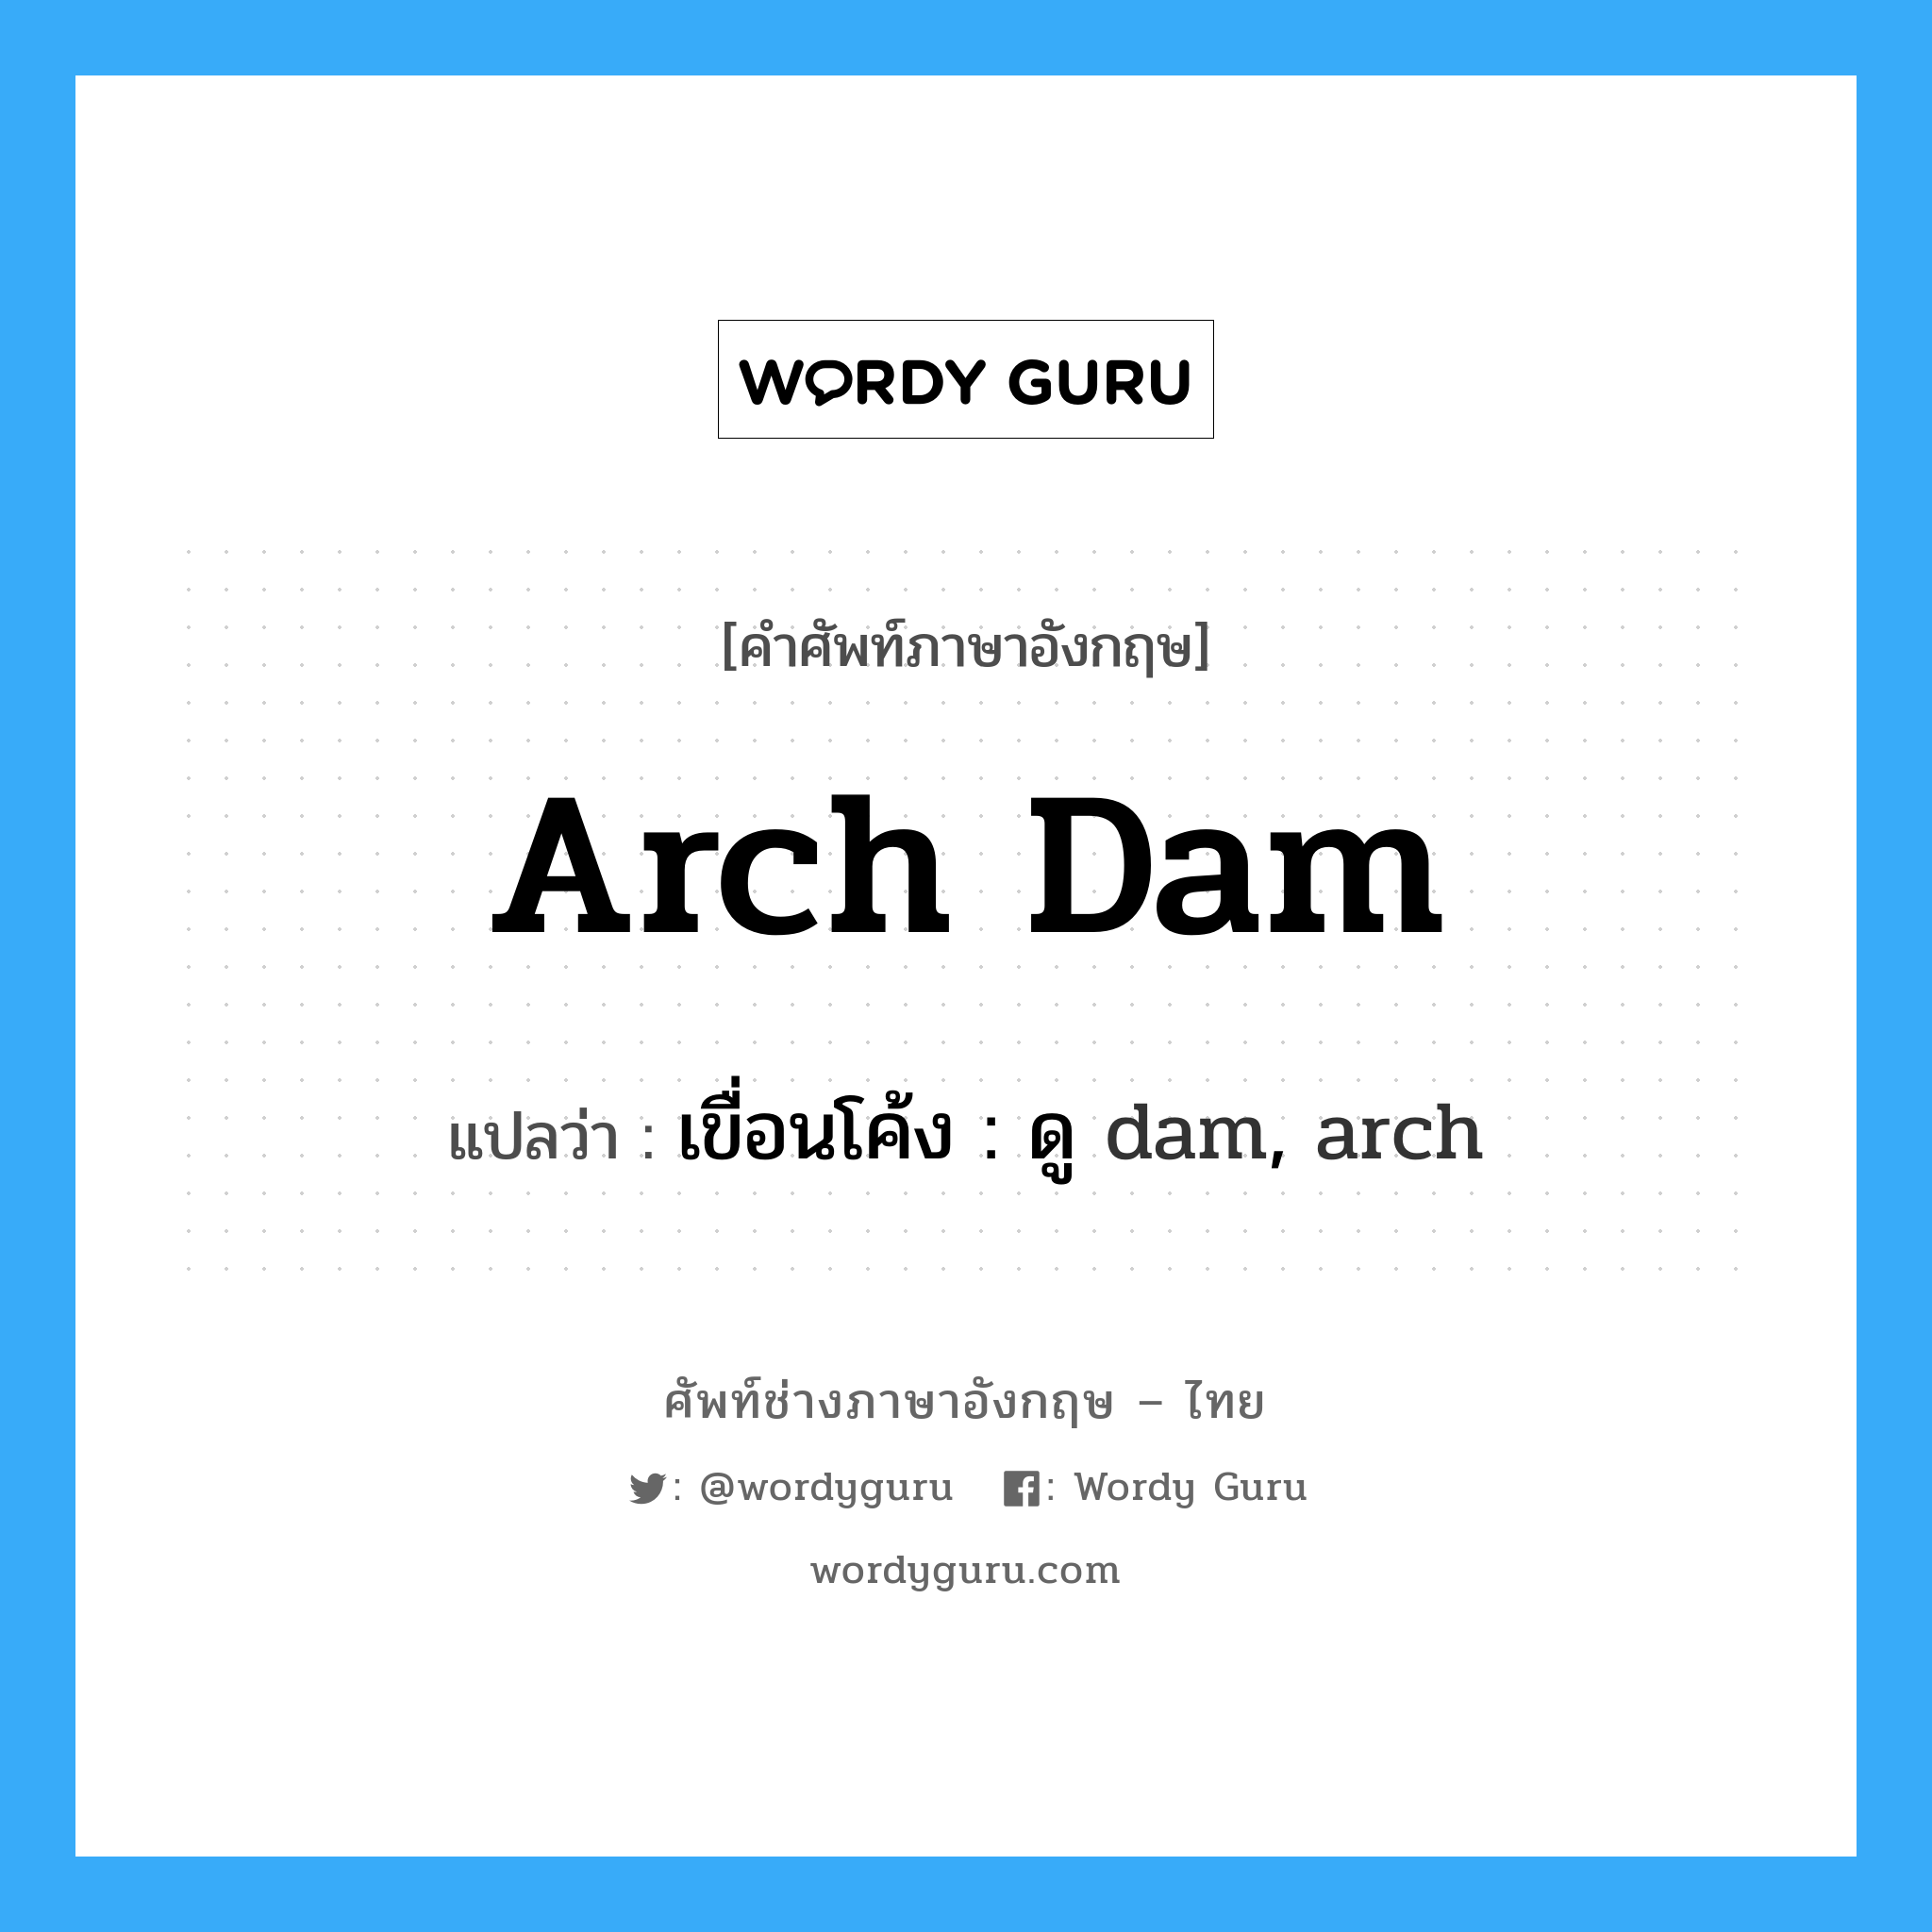 เขื่อนโค้ง : ดู dam, arch ภาษาอังกฤษ?, คำศัพท์ช่างภาษาอังกฤษ - ไทย เขื่อนโค้ง : ดู dam, arch คำศัพท์ภาษาอังกฤษ เขื่อนโค้ง : ดู dam, arch แปลว่า arch dam